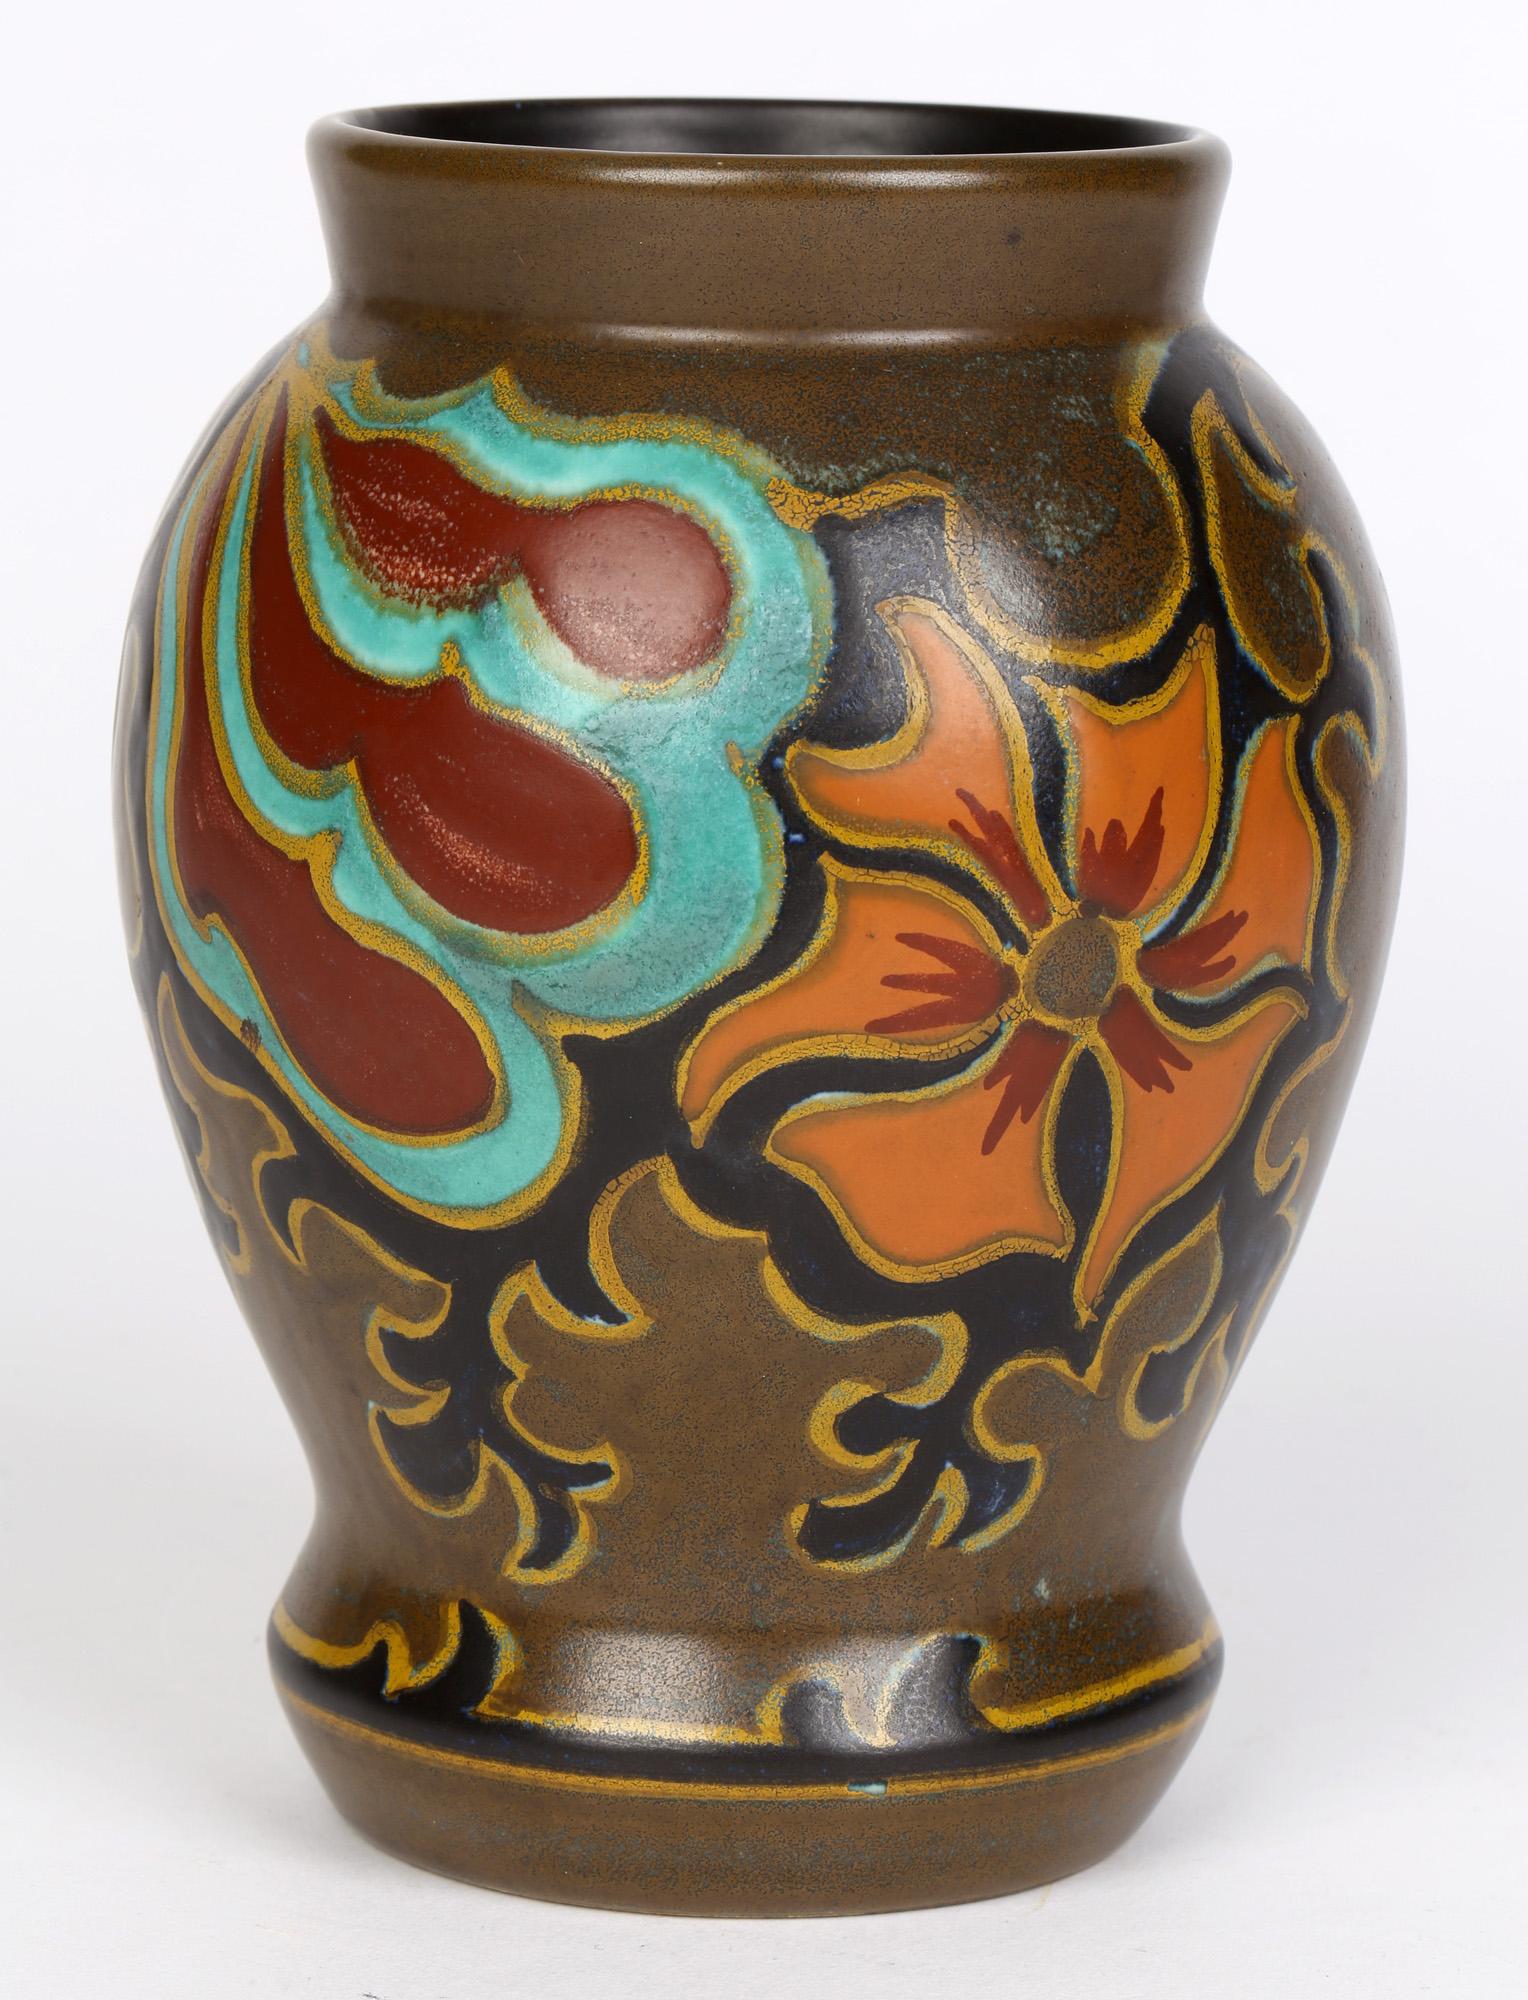 Plateelbakkerij Zuid-Holland (PZH) Vase en poterie de Gouda Art Déco hollandais peint à la main dans le design Silvia datant d'environ 1920. Ce vase en terre cuite légèrement empoté est peint à la main dans des émaux colorés avec un motif floral